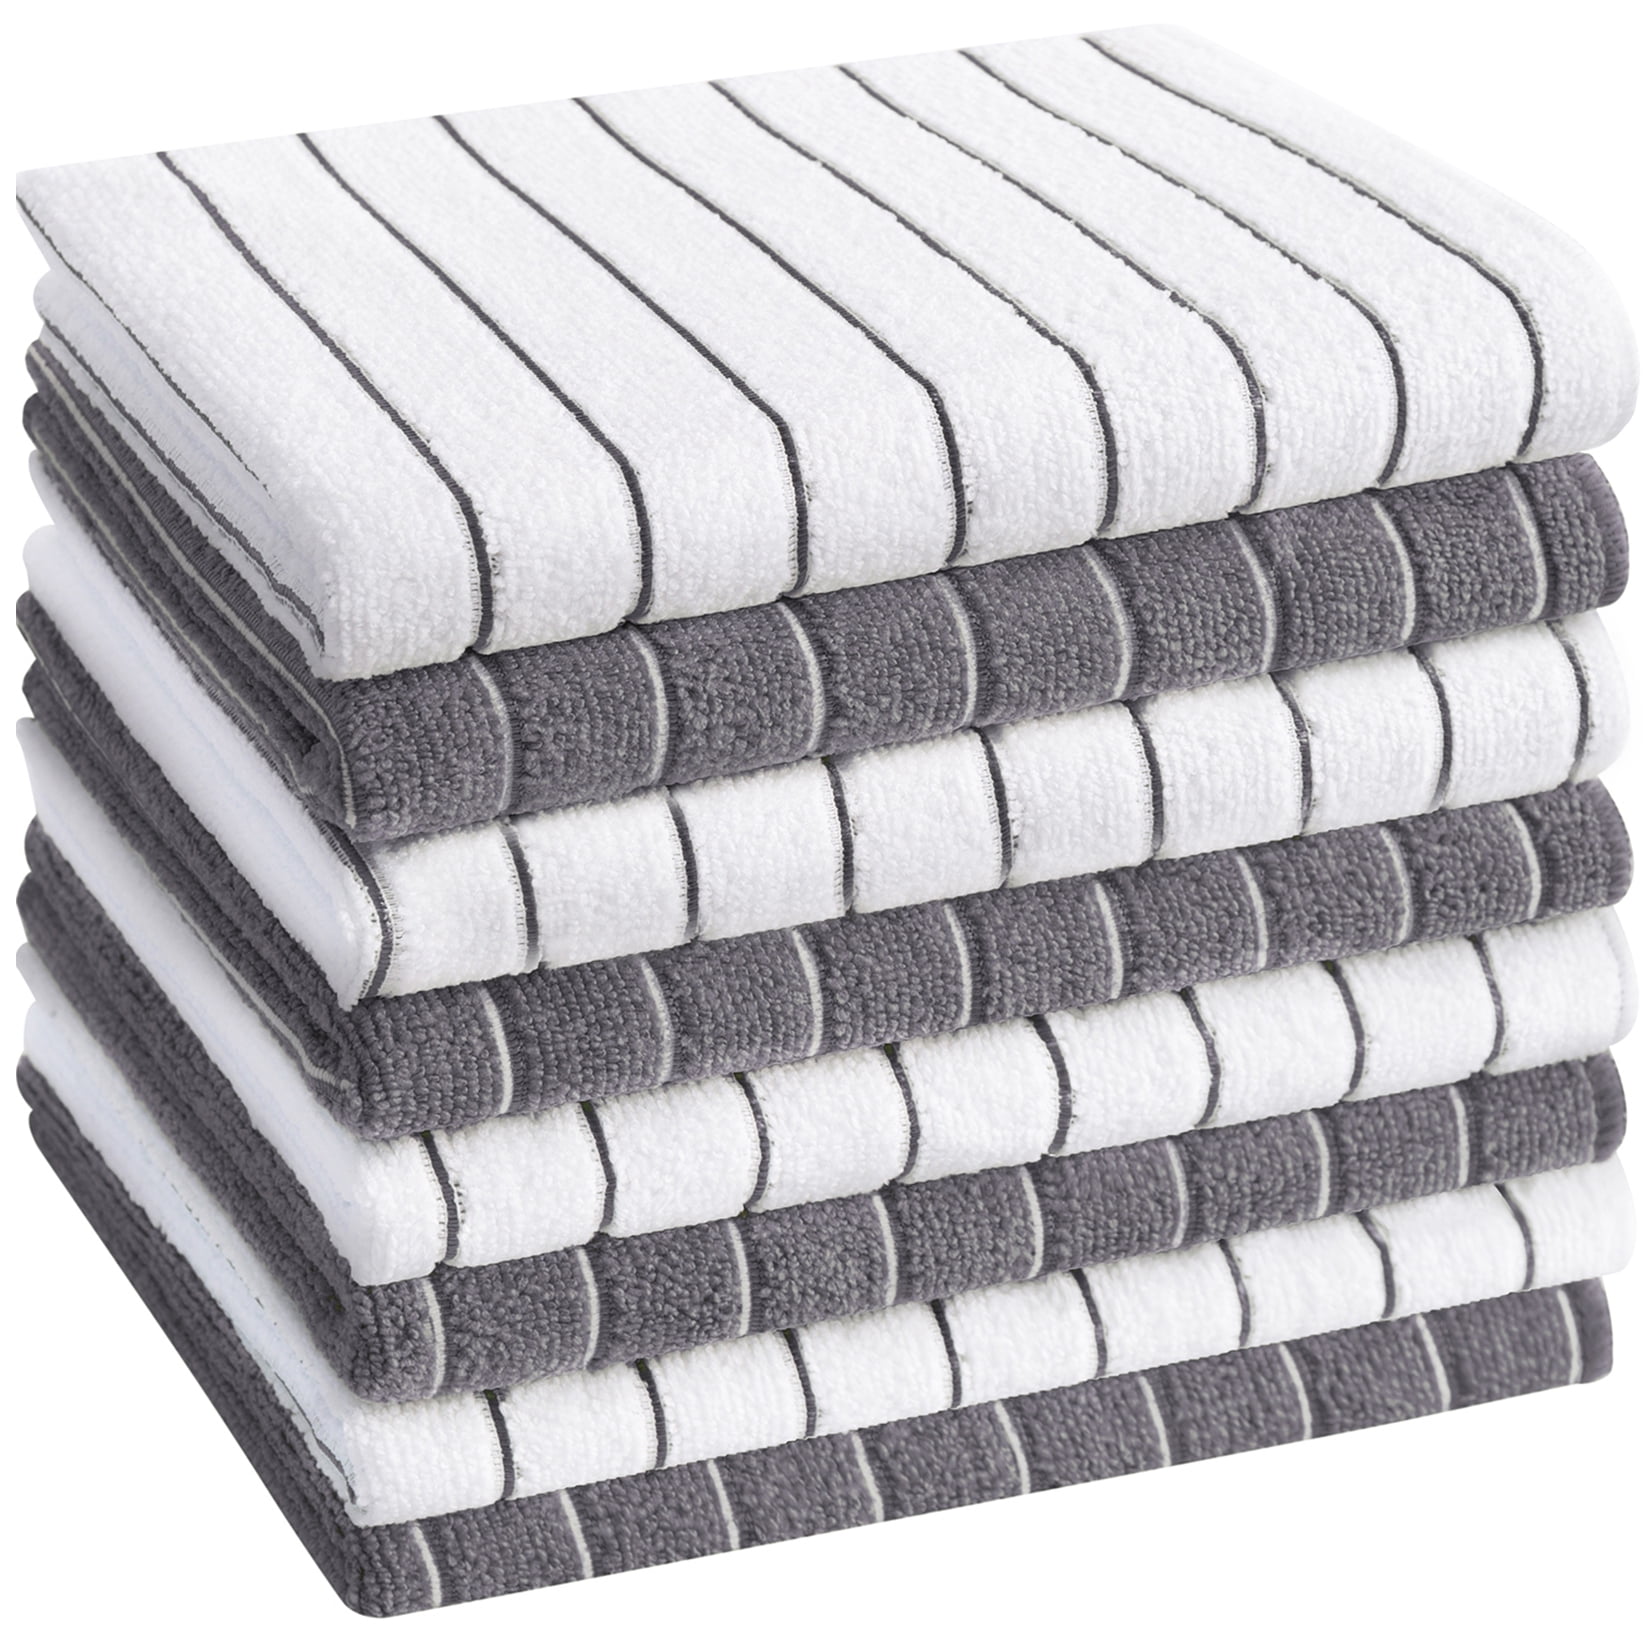 12 Pack Kitchen Towel Dish Cloth Super Absorbent Tea Towels 15x25" Arrow Design. 